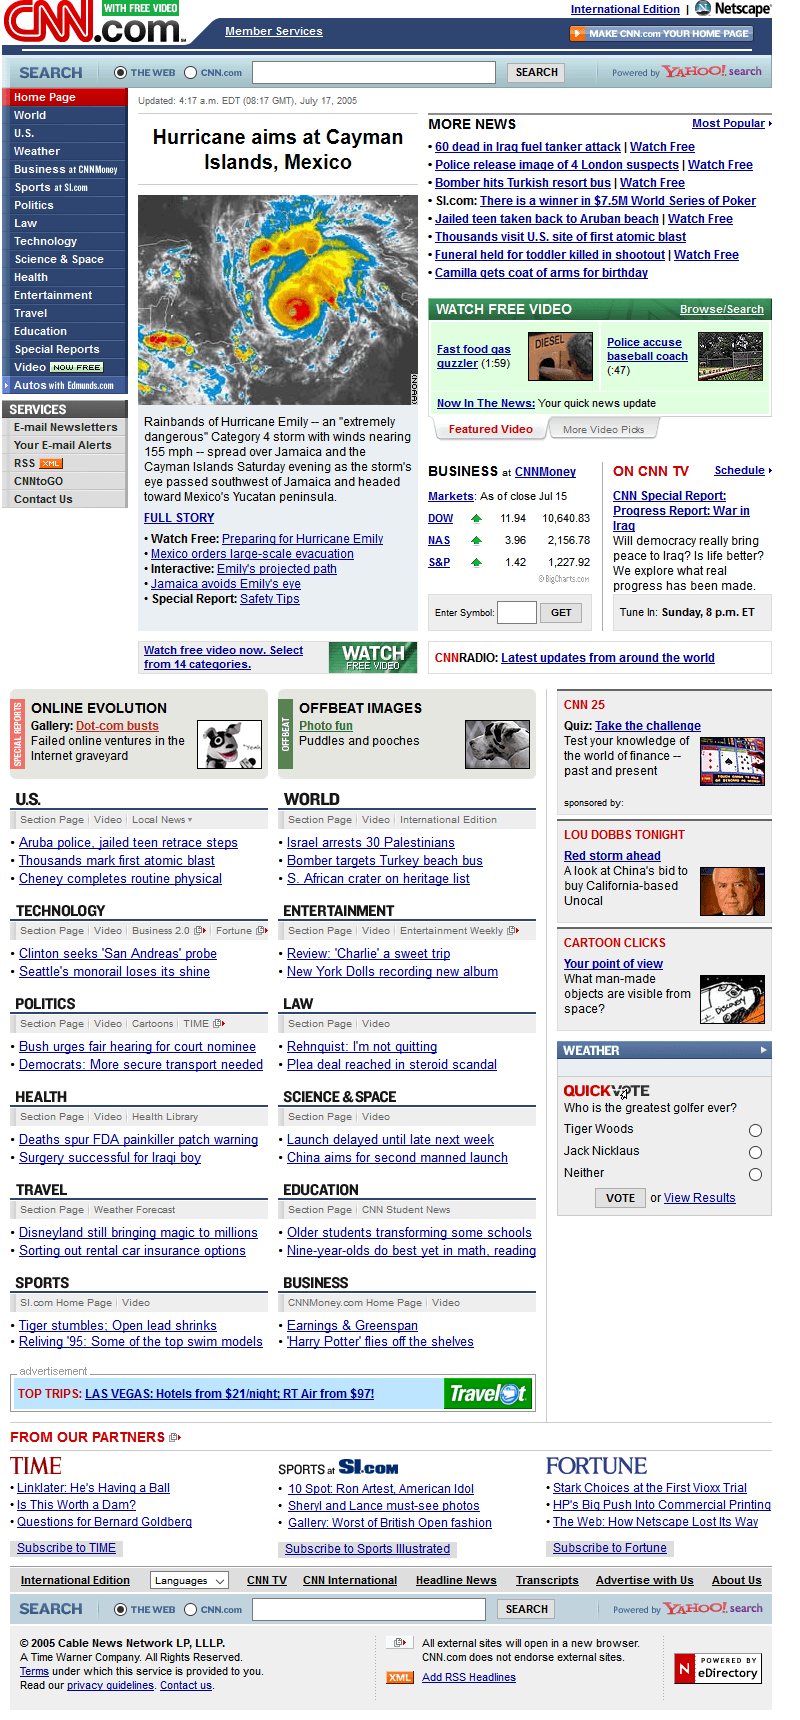 CNN.com website in 2005